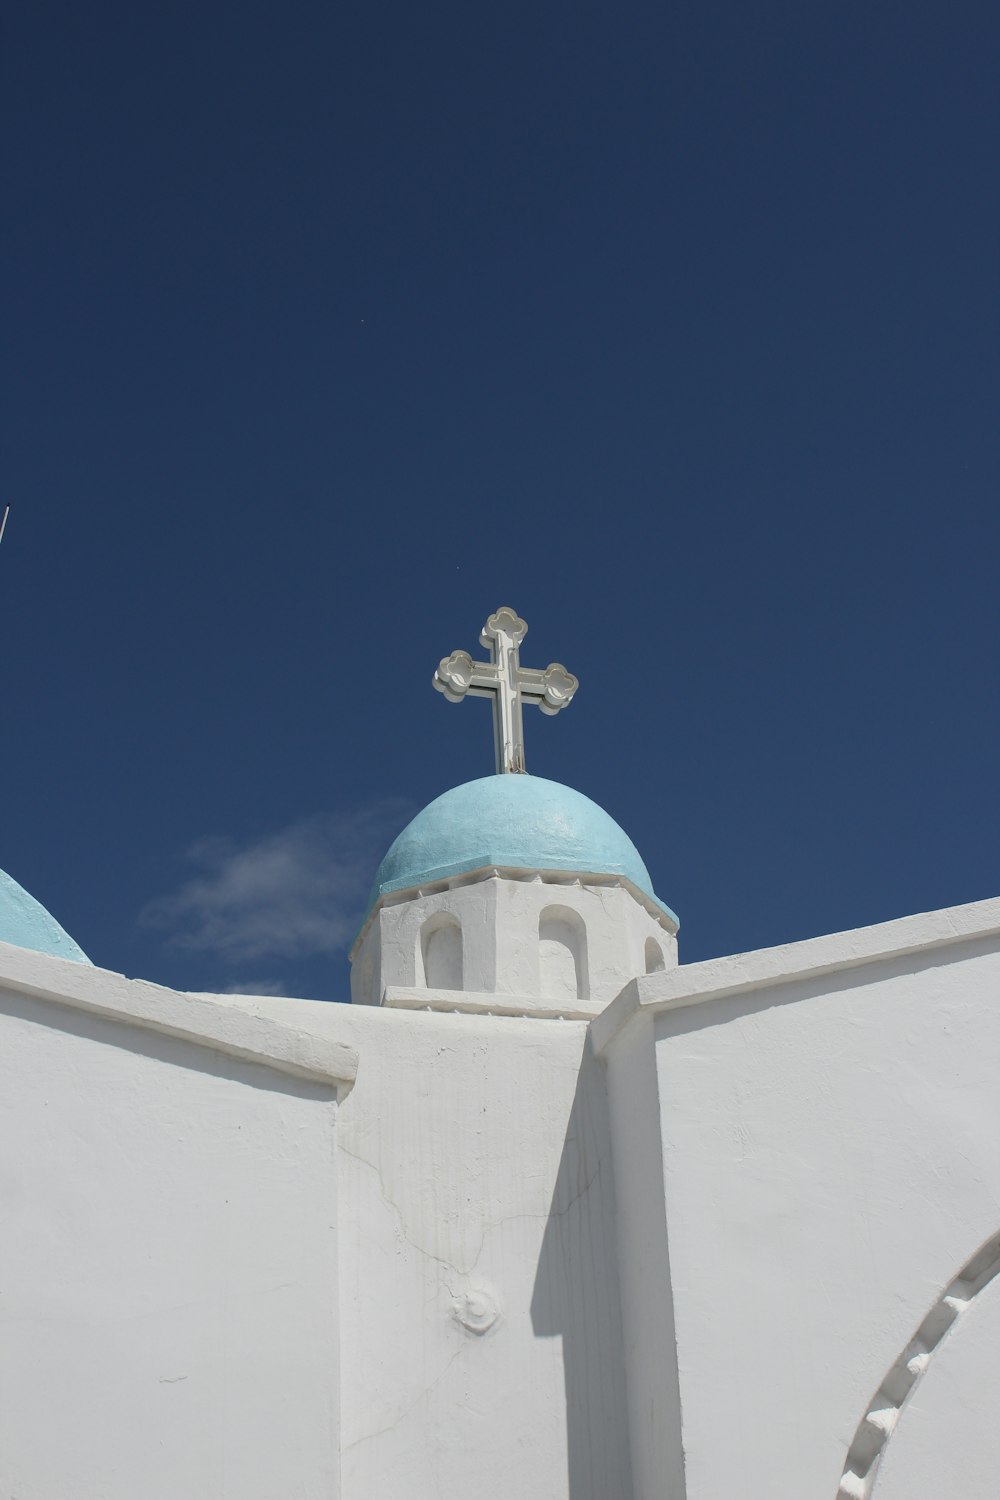 파란색 돔과 꼭대기에 십자가가 있는 흰색 건물